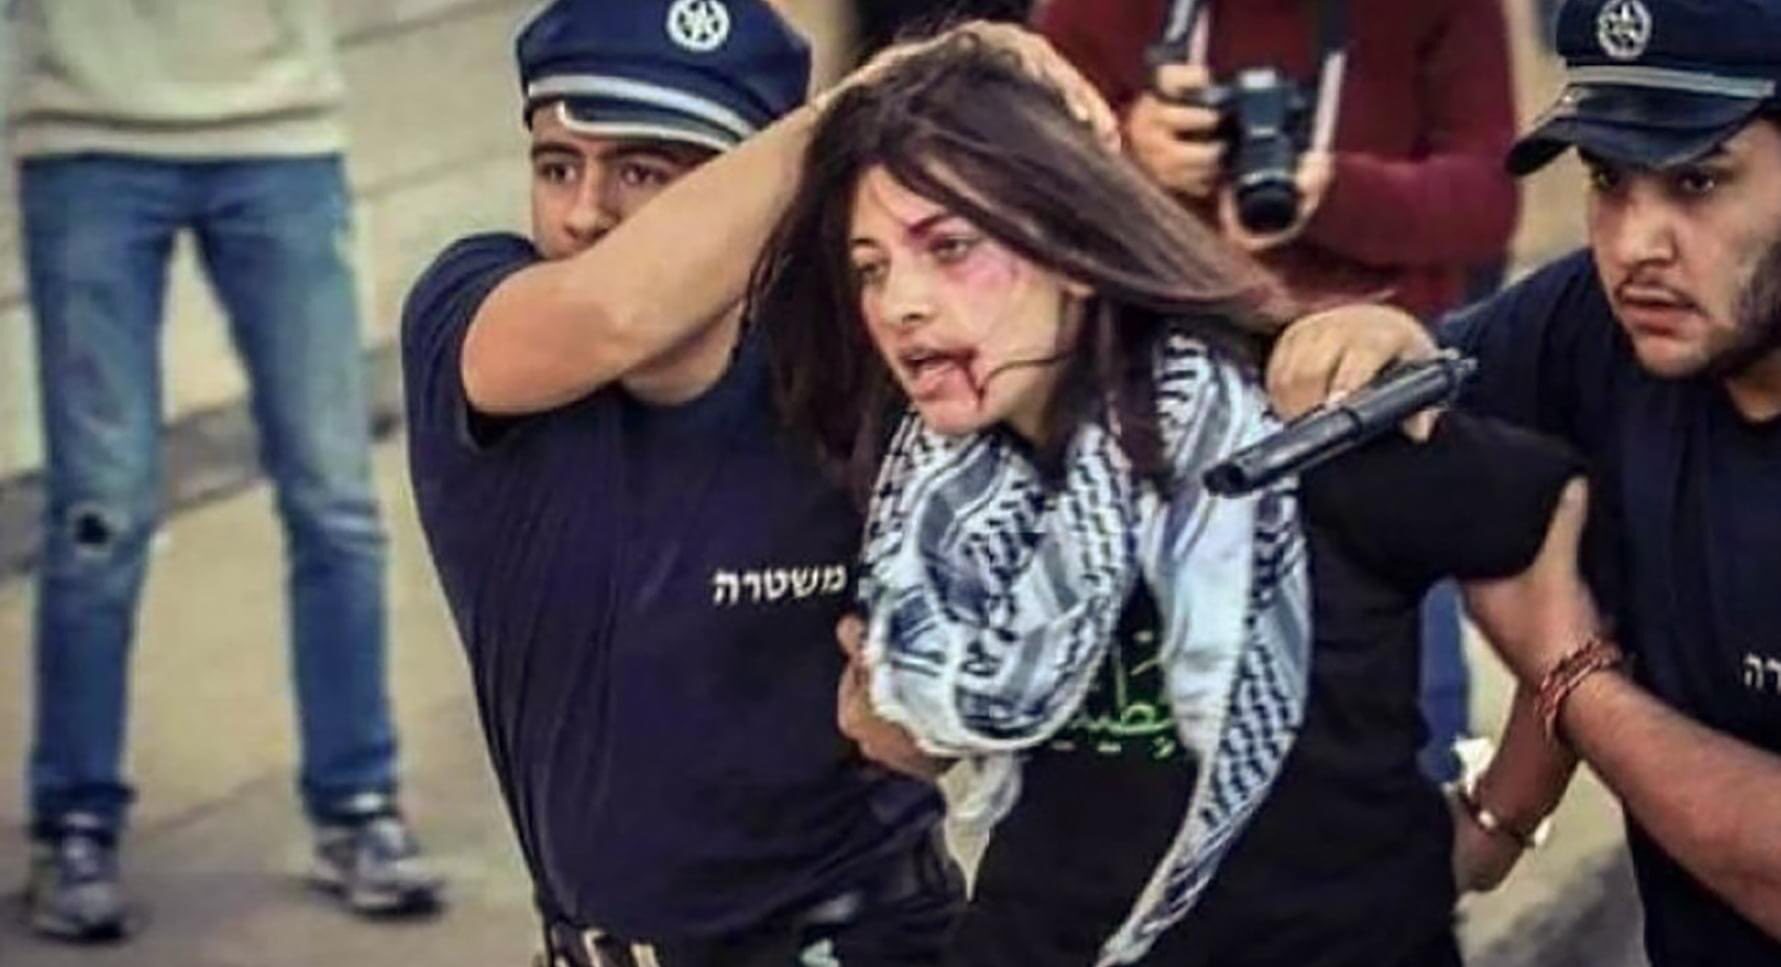 femme palestinienne interpellation violente